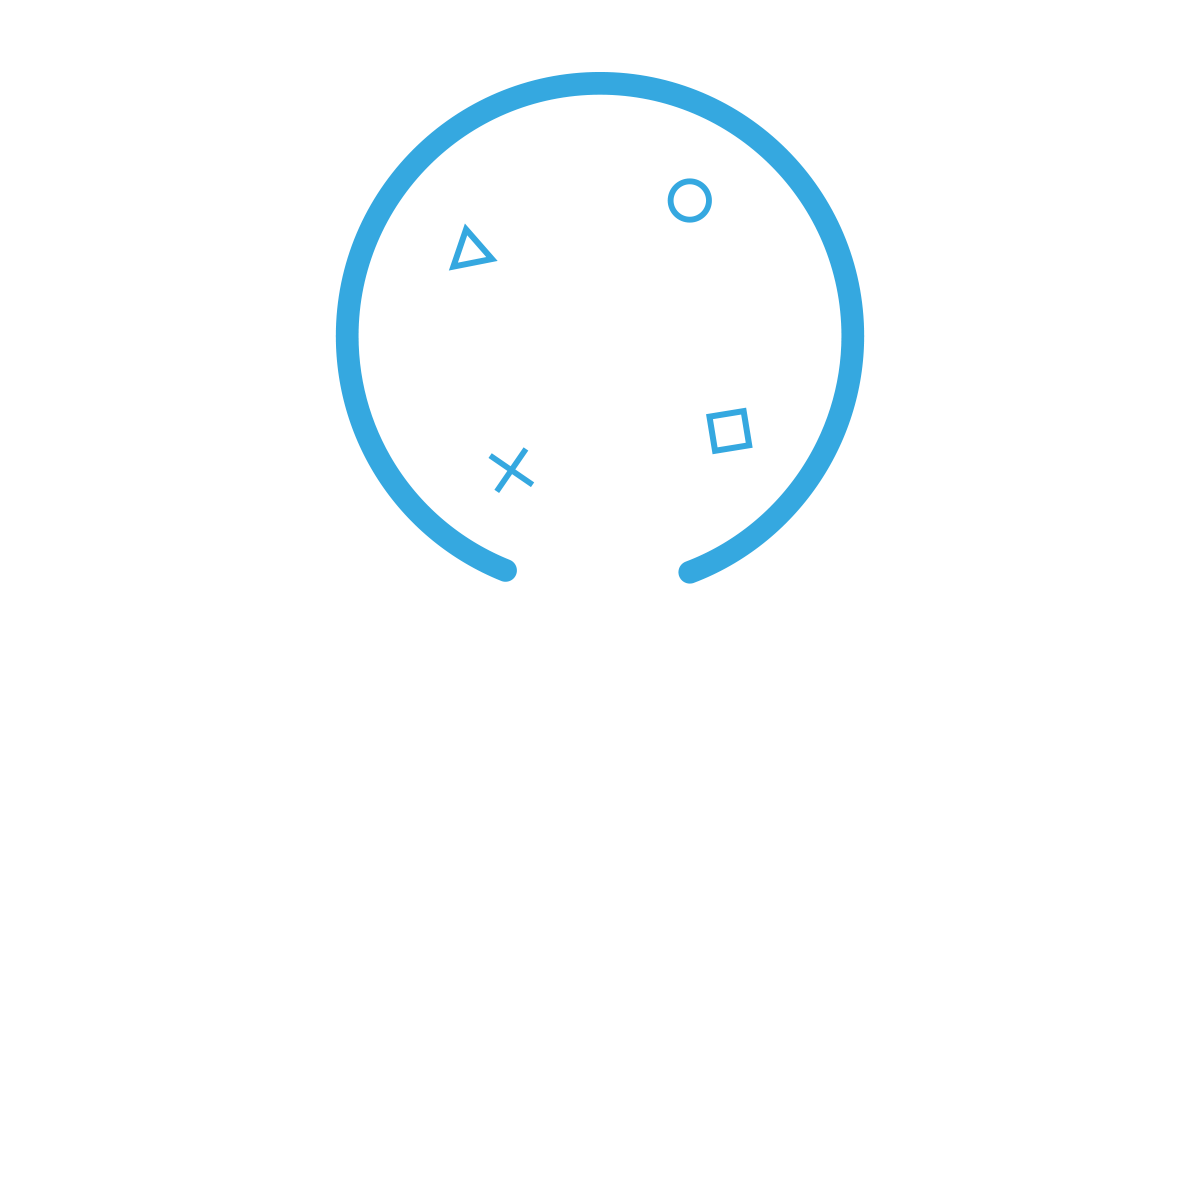 PLAY LAN MYM | La mejor tienda de juegos digitales :)